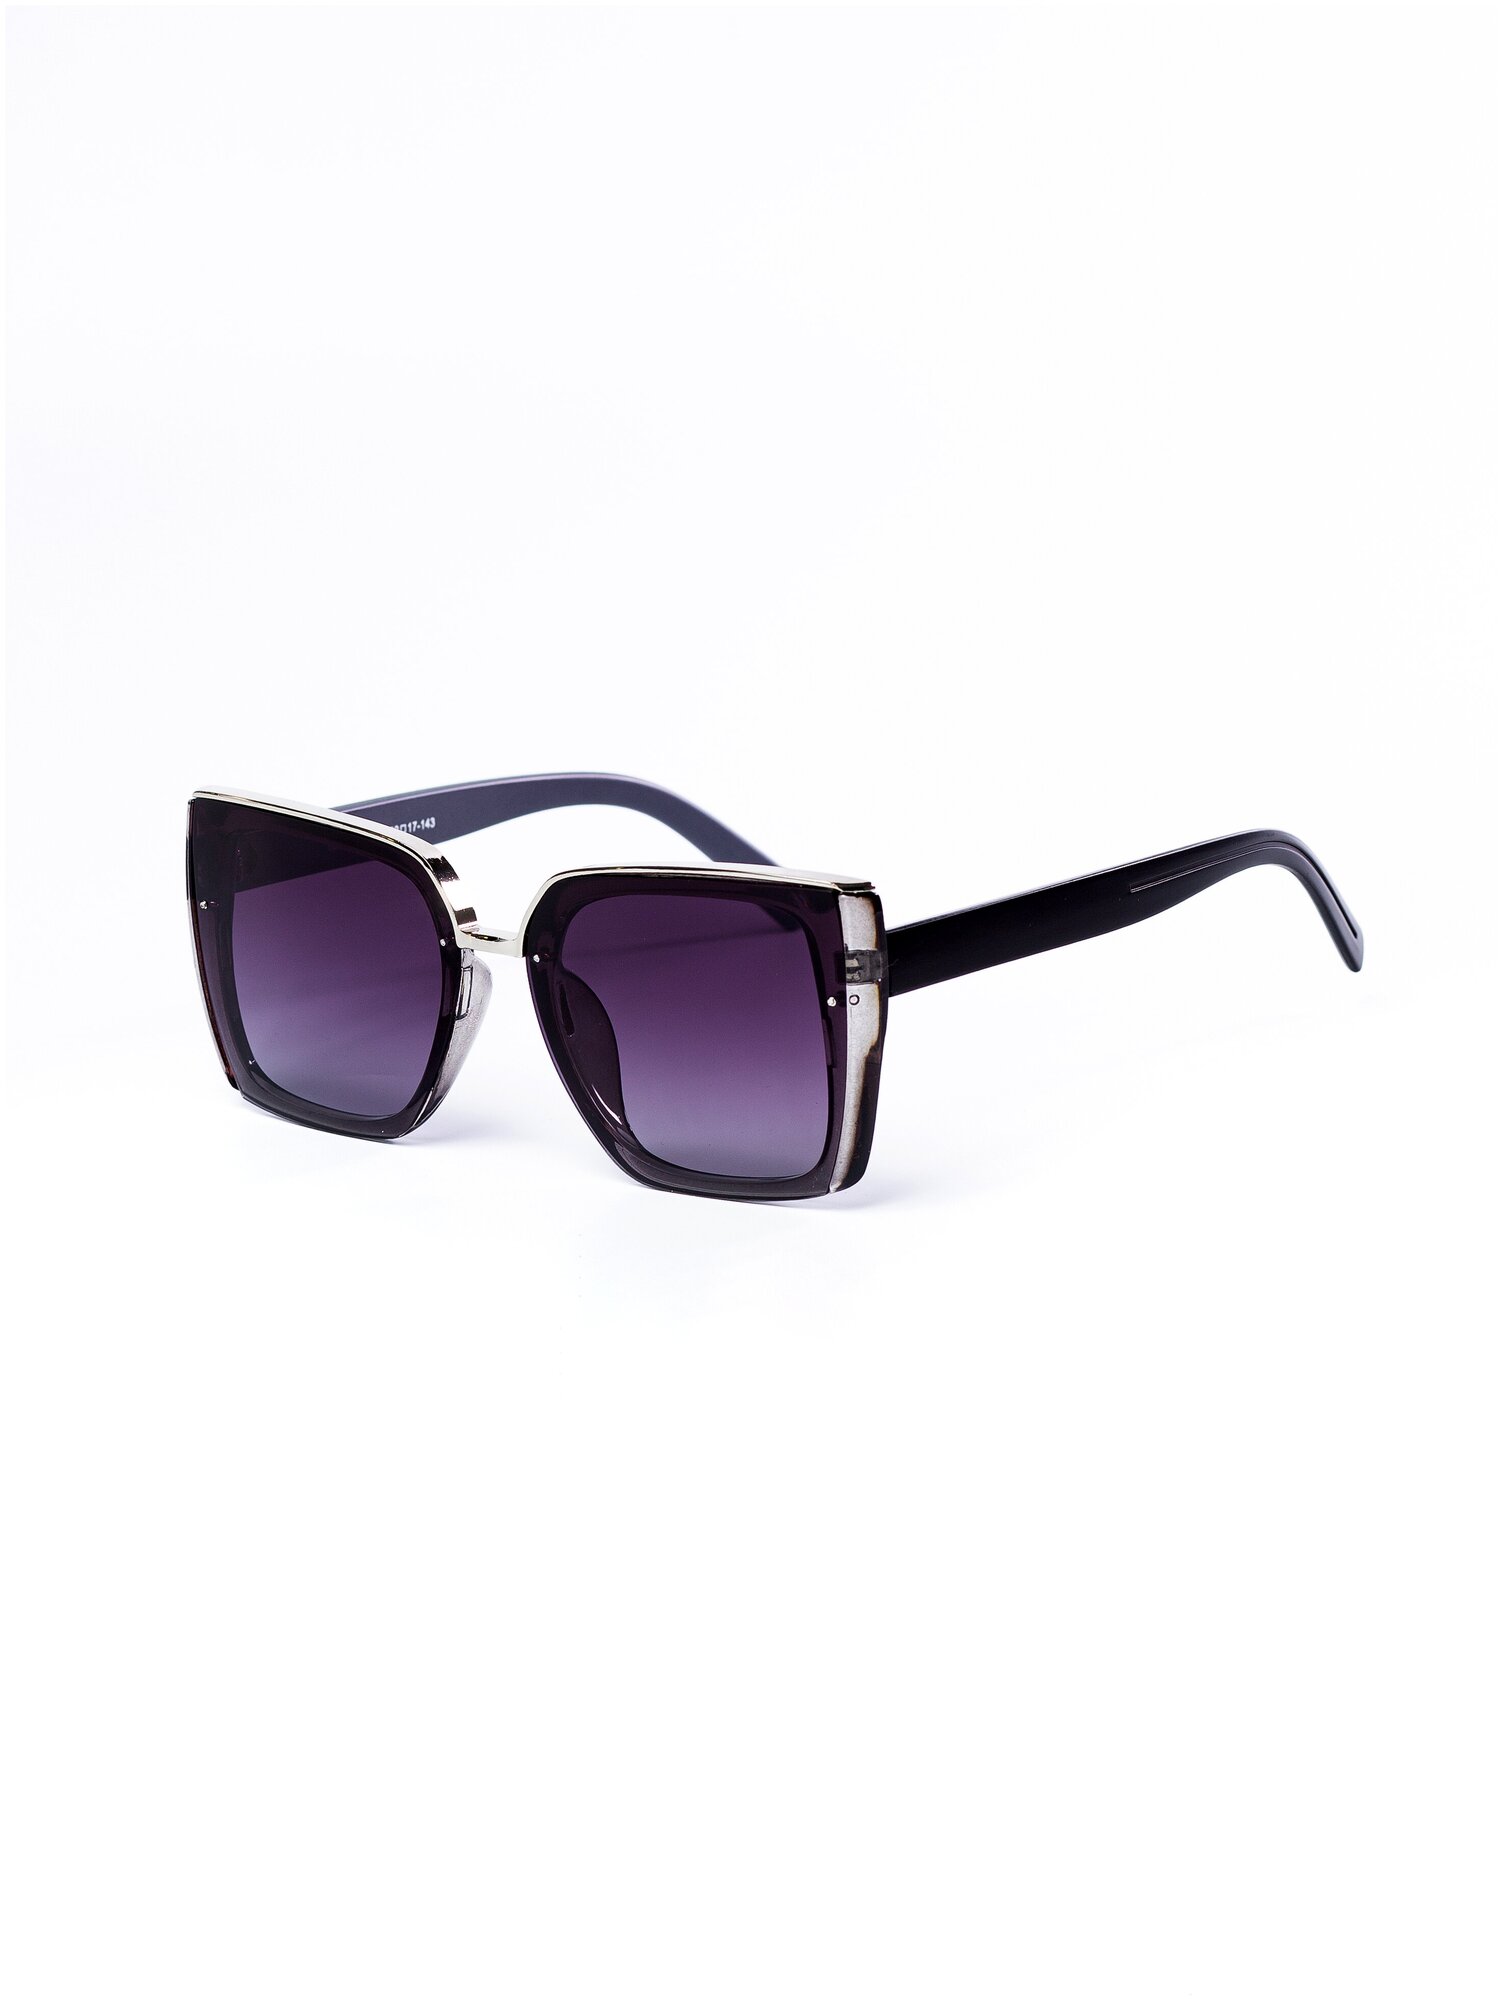 Солнцезащитные очки женские / Квадратная оправа / Стильные очки / Ультрафиолетовый фильтр / Защита UV400 / Темные очки 200422542